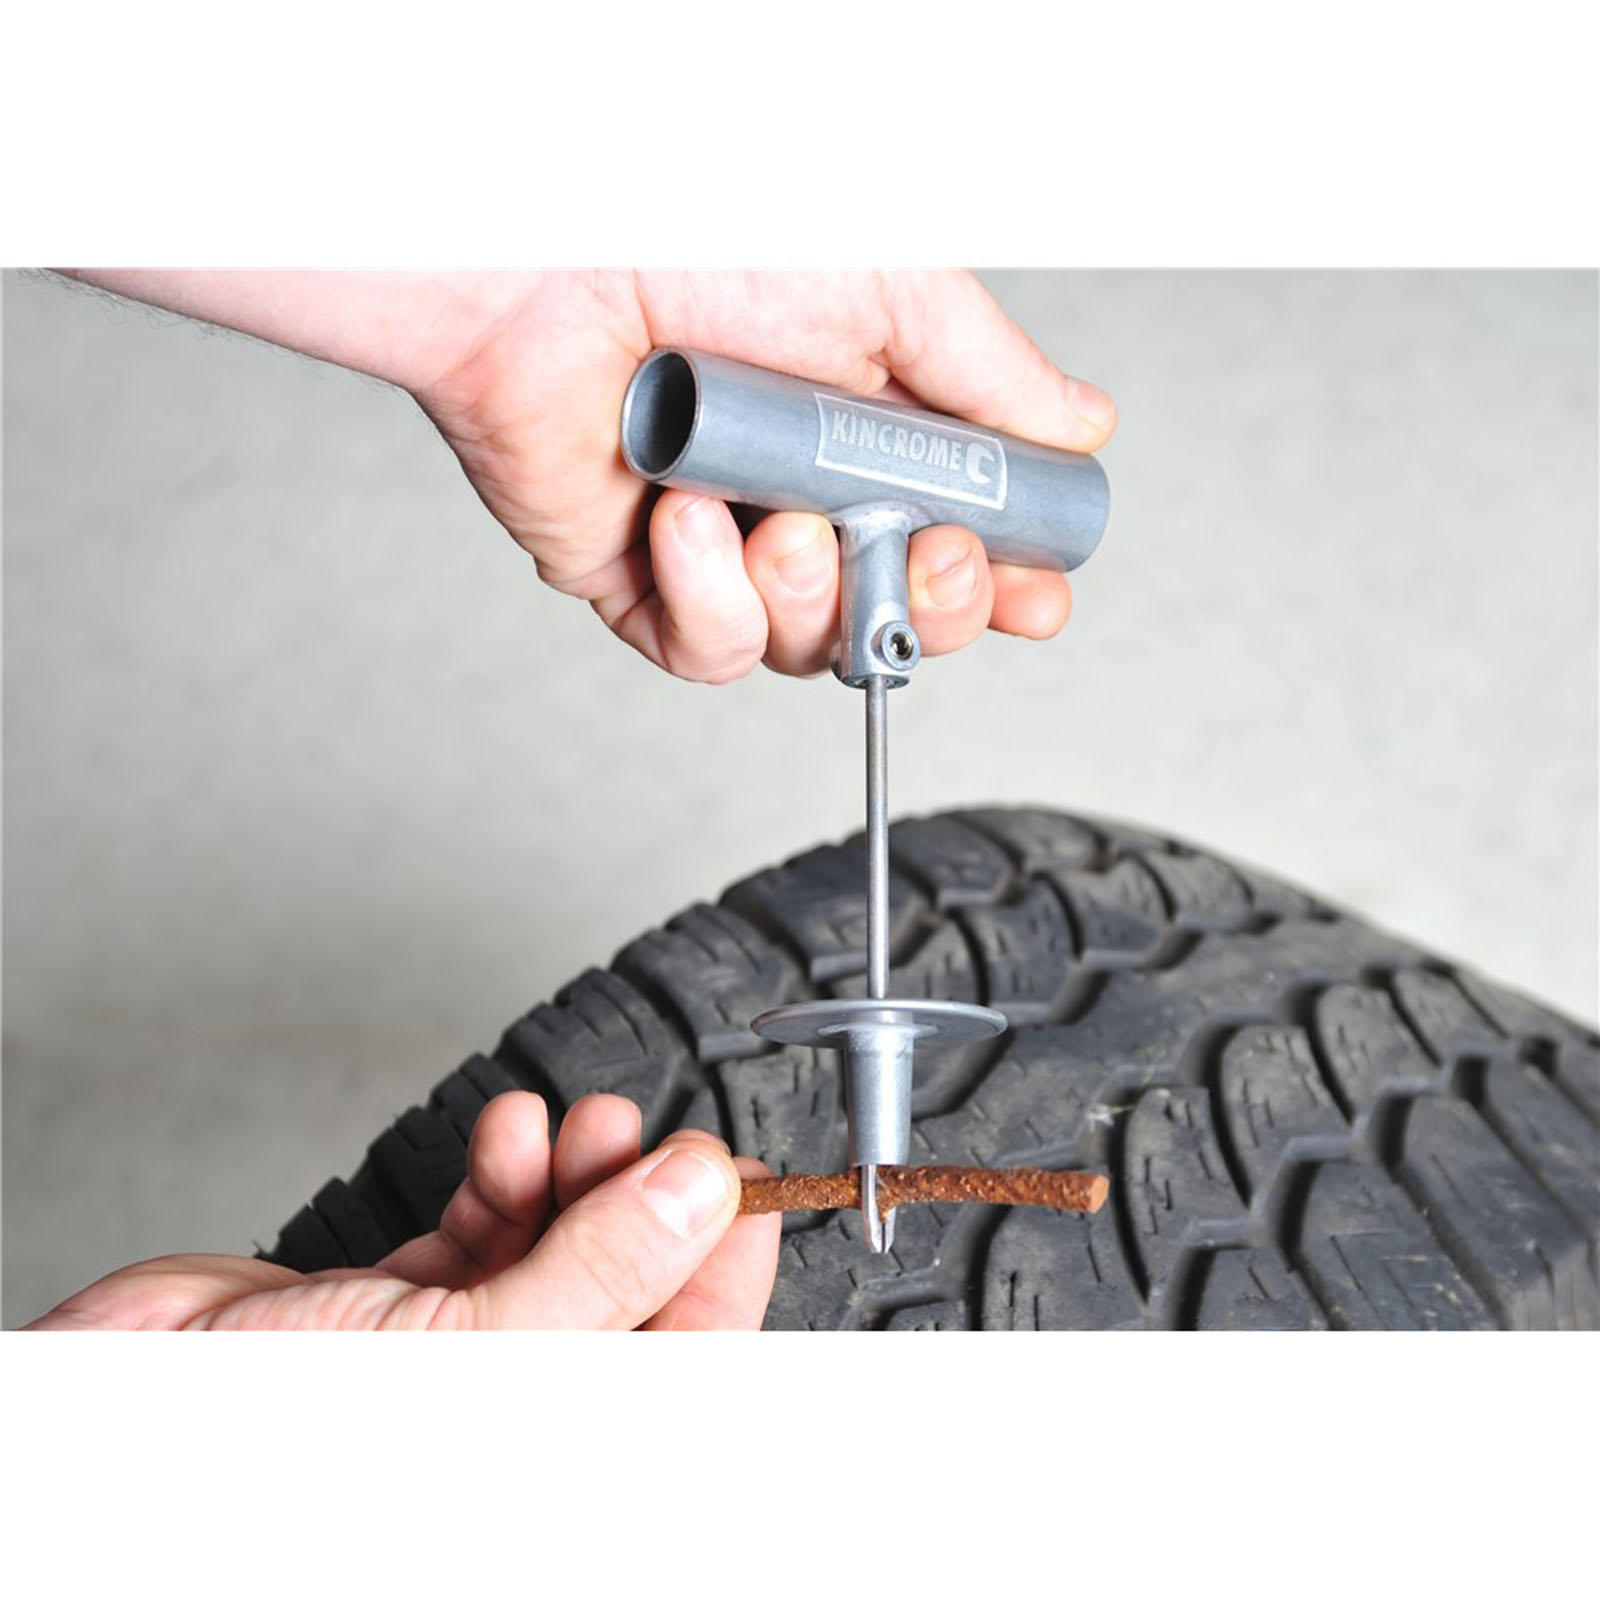 Tyre Repair Kit 53 Piece - Kincrome Tools - Kincrome